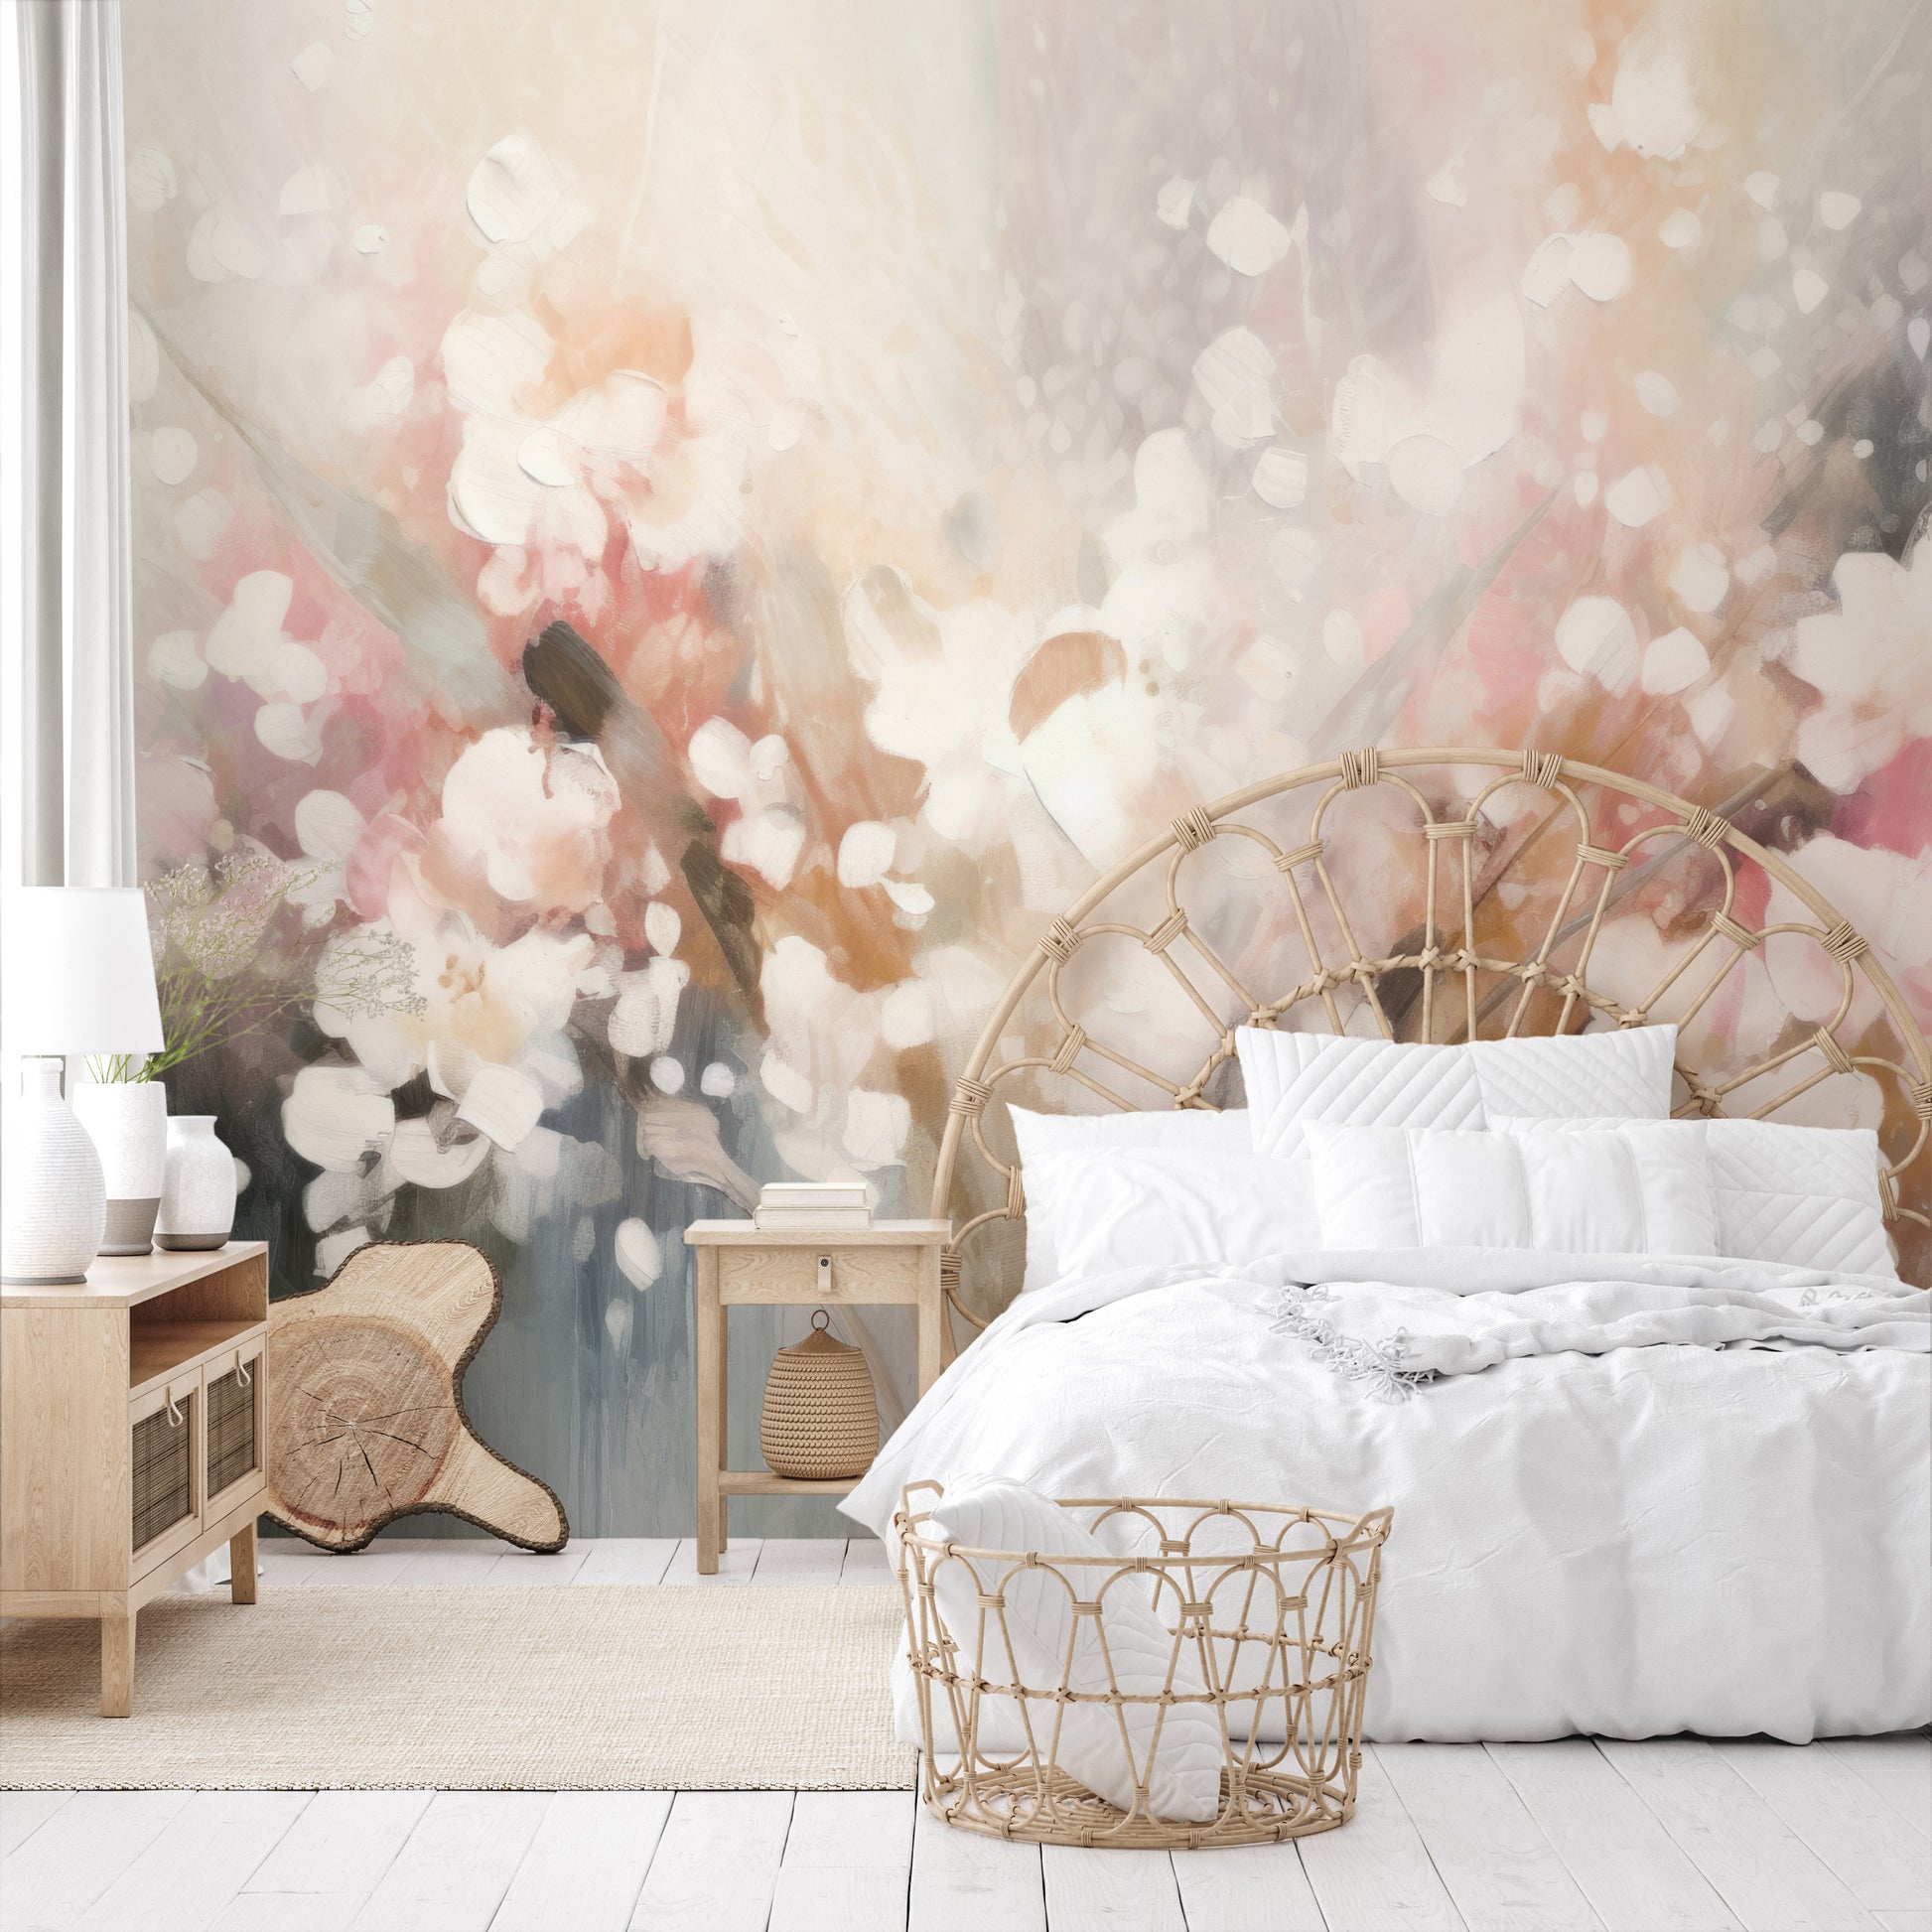 Fototapeta malowana o nazwie Blossom Softness pokazana w aranżacji wnętrza.